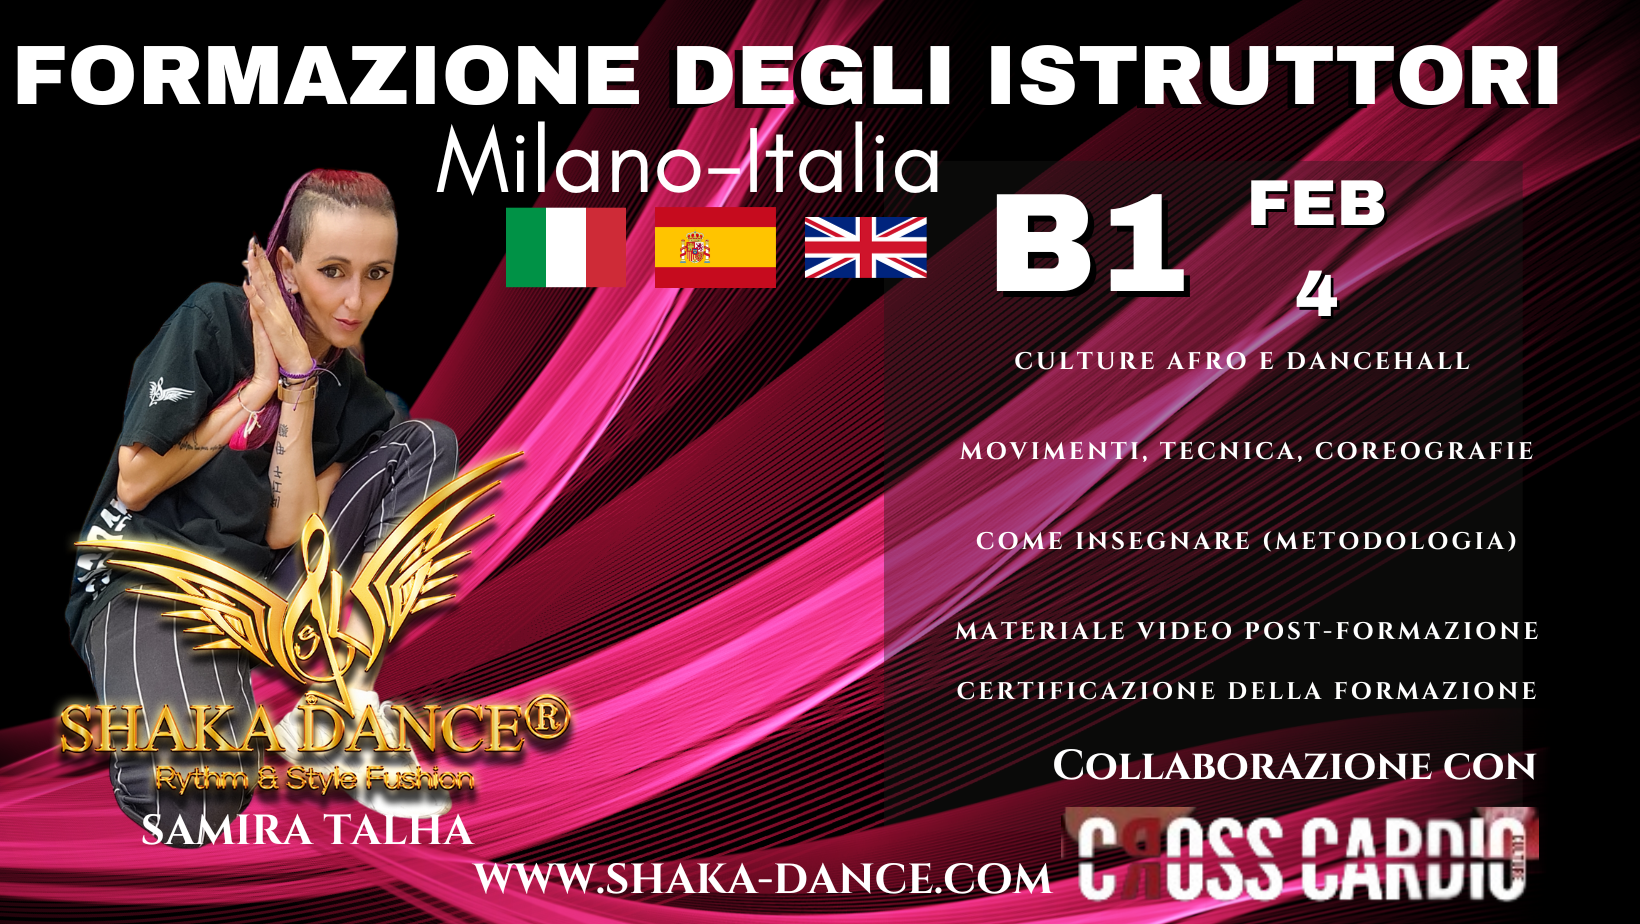 SHAKA DANCE®FORMAZIONE DEGLI ISTRUTTORI-MILANO-ITALIA